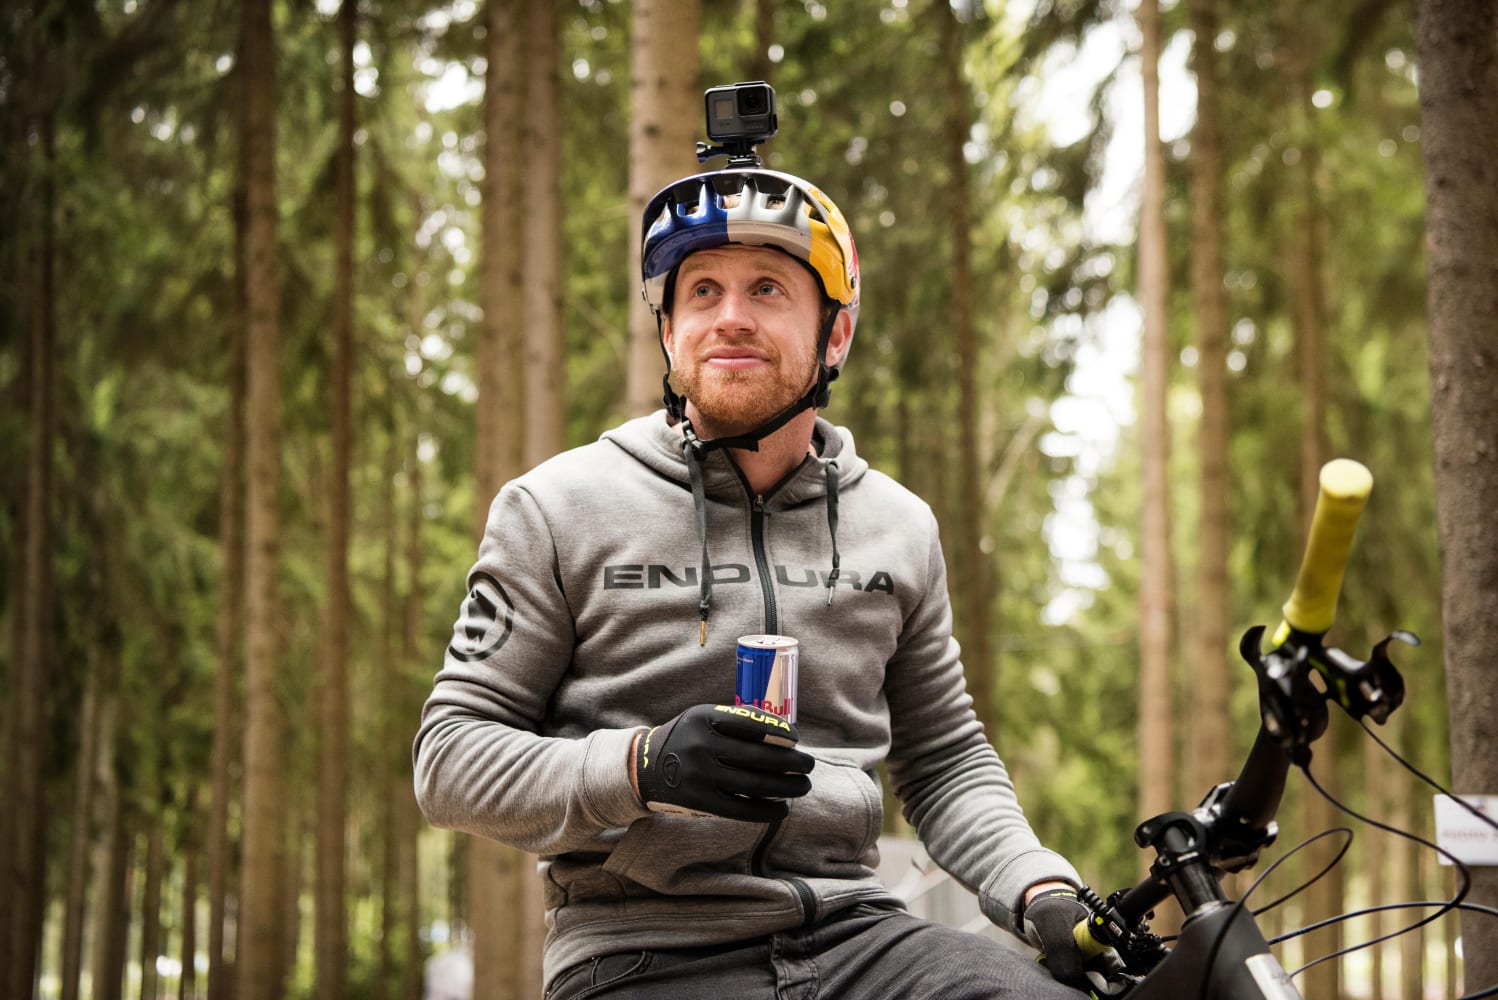 Ga door Bier persoonlijkheid Best action cameras: Top 9 for mountain biking